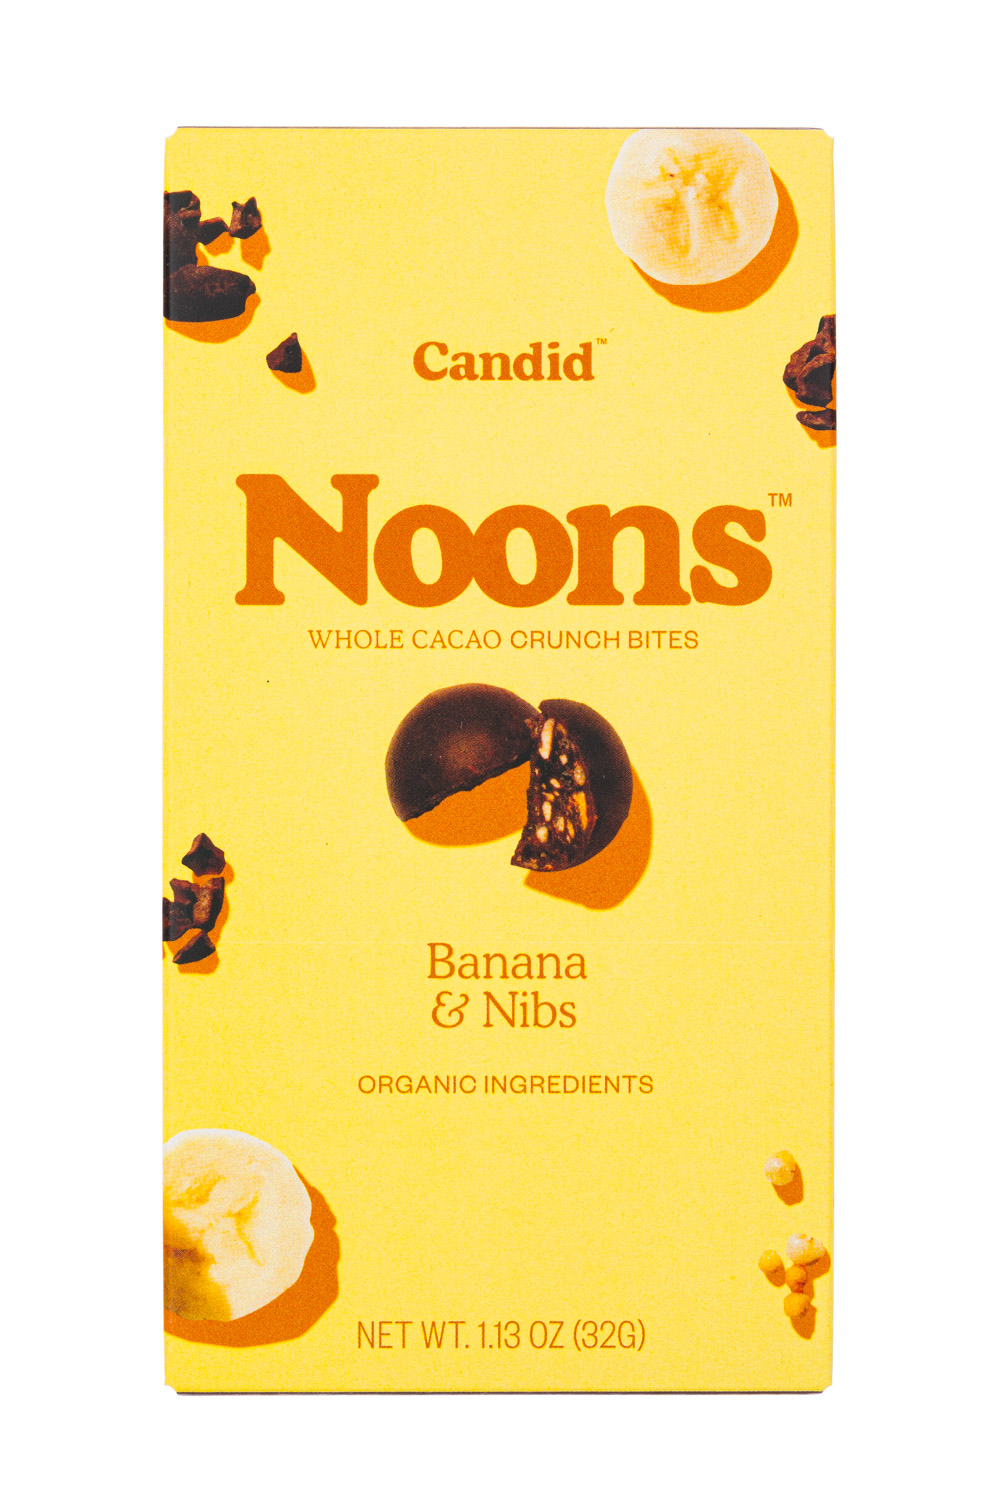 Noons: Banana & Nibs